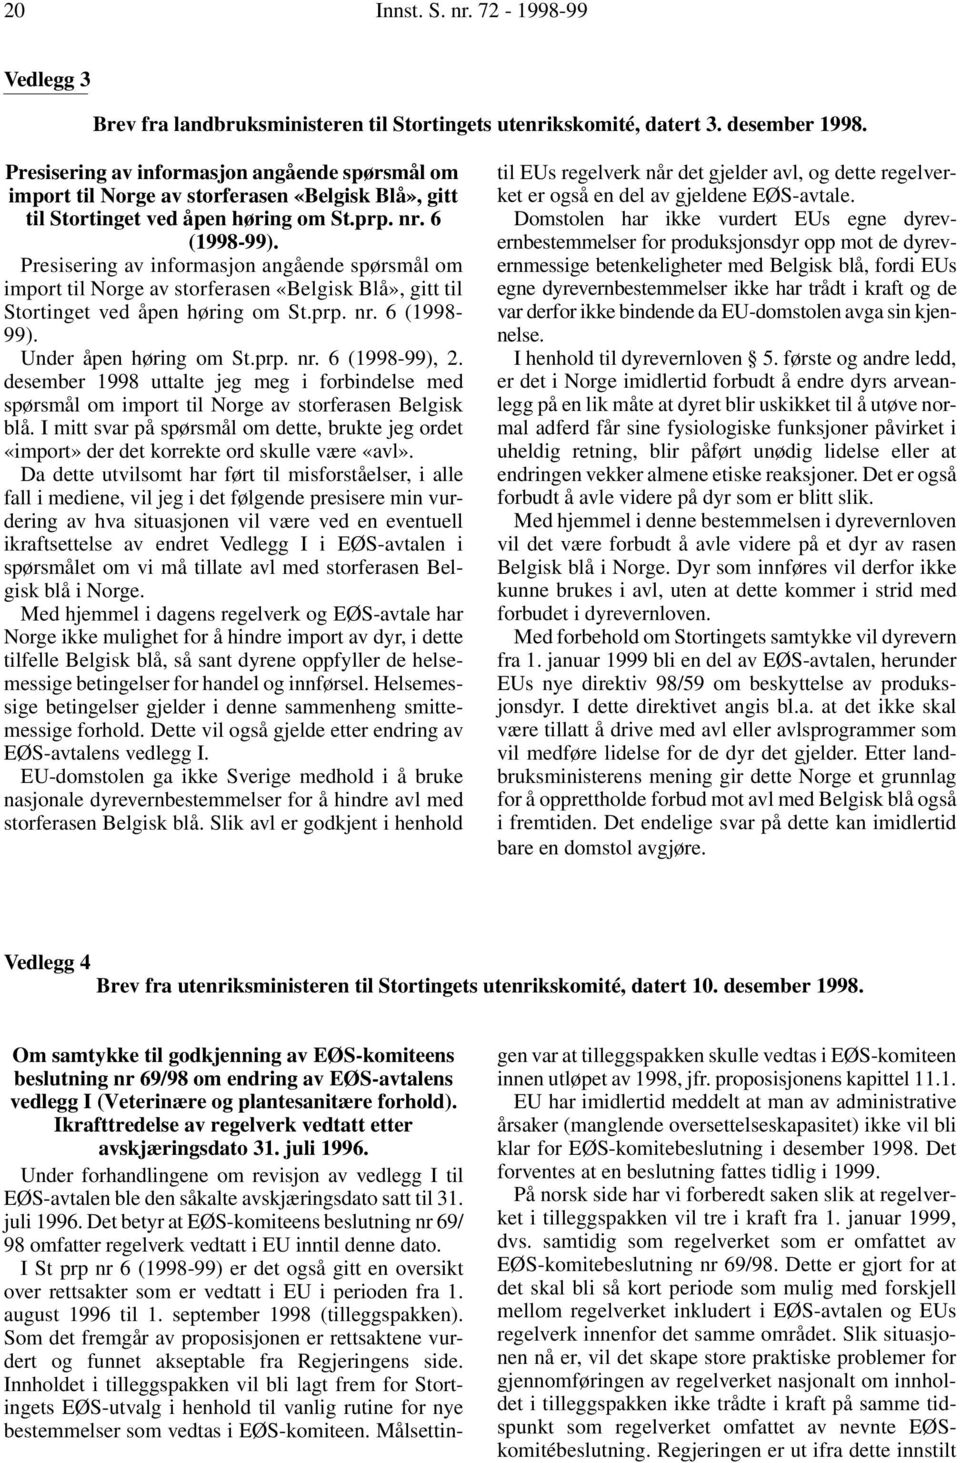 Under åpen høring om St.prp. nr. 6 (1998-99), 2. desember 1998 uttalte jeg meg i forbindelse med spørsmål om import til Norge av storferasen Belgisk blå.